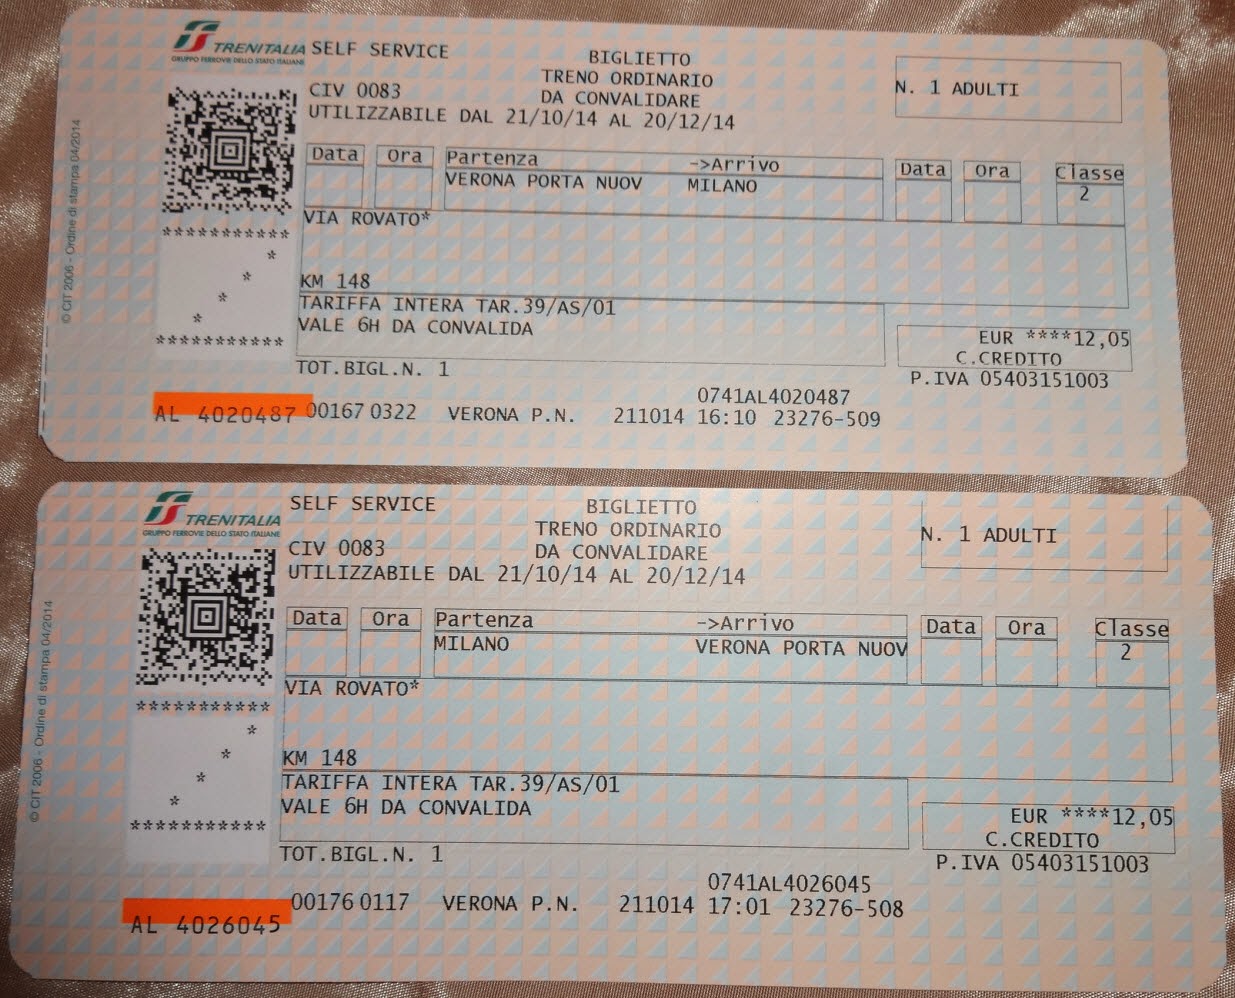 цены на билеты самолетом в италию